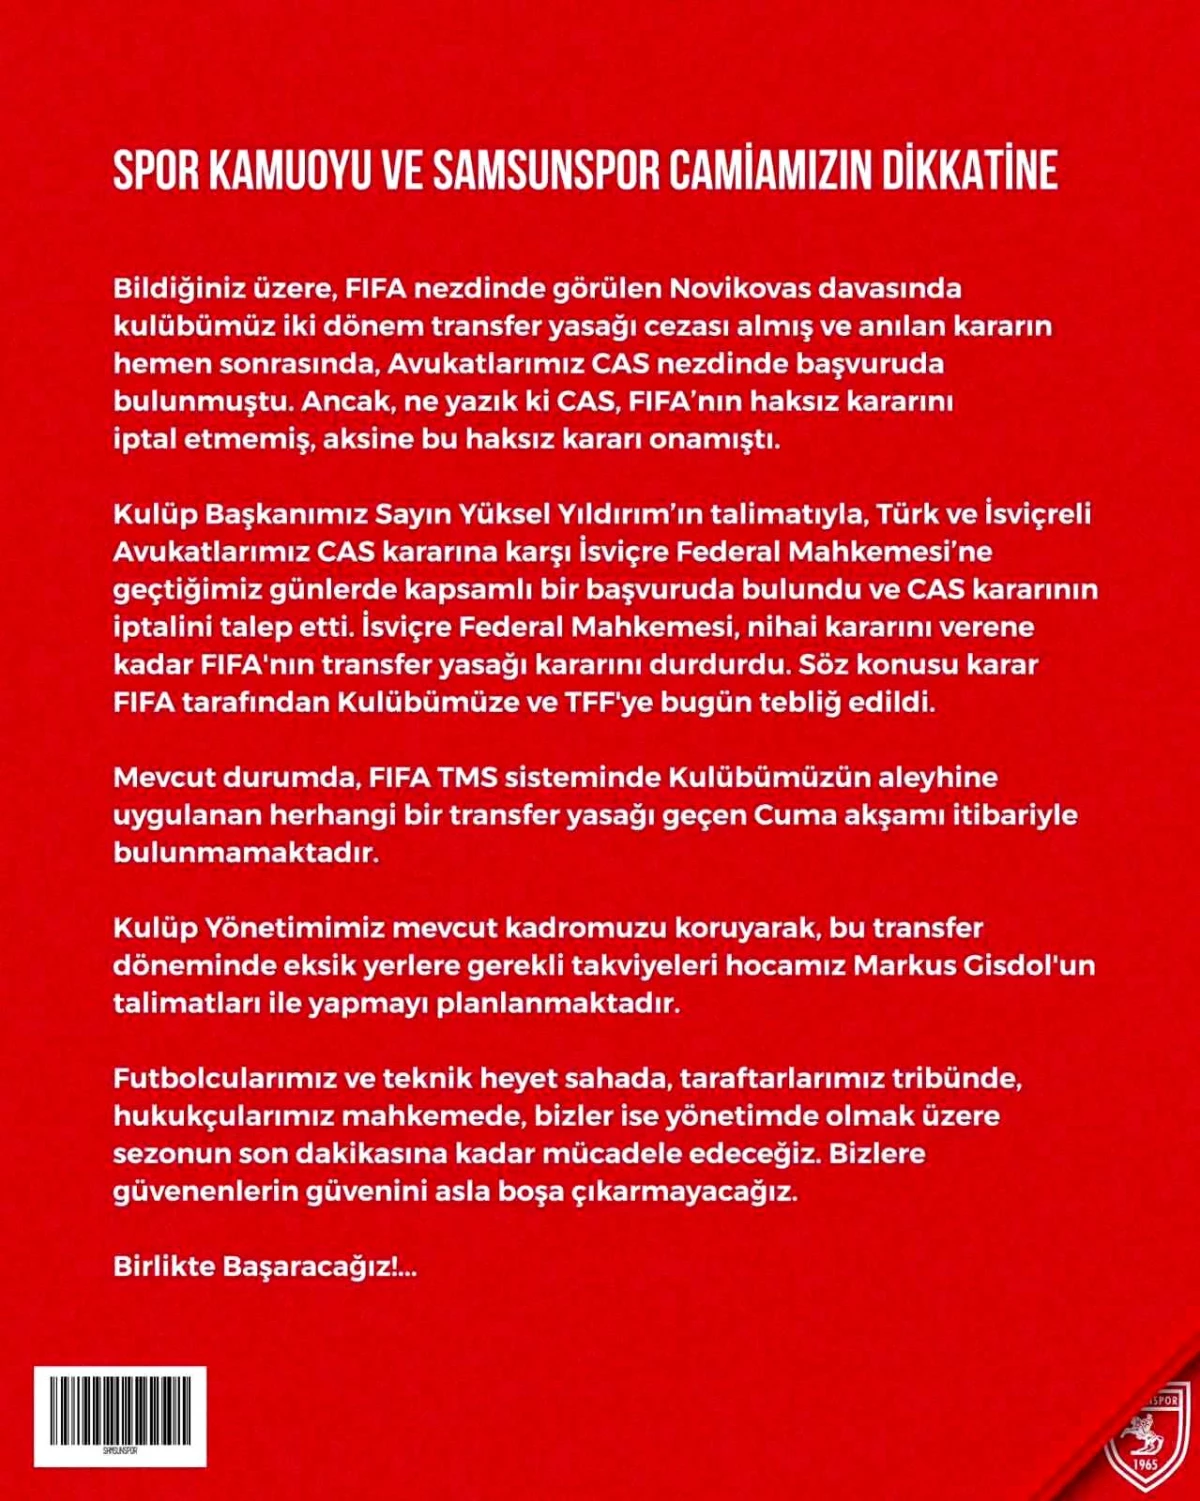 Samsunspor\'a FIFA transfer yasağı kararı durduruldu